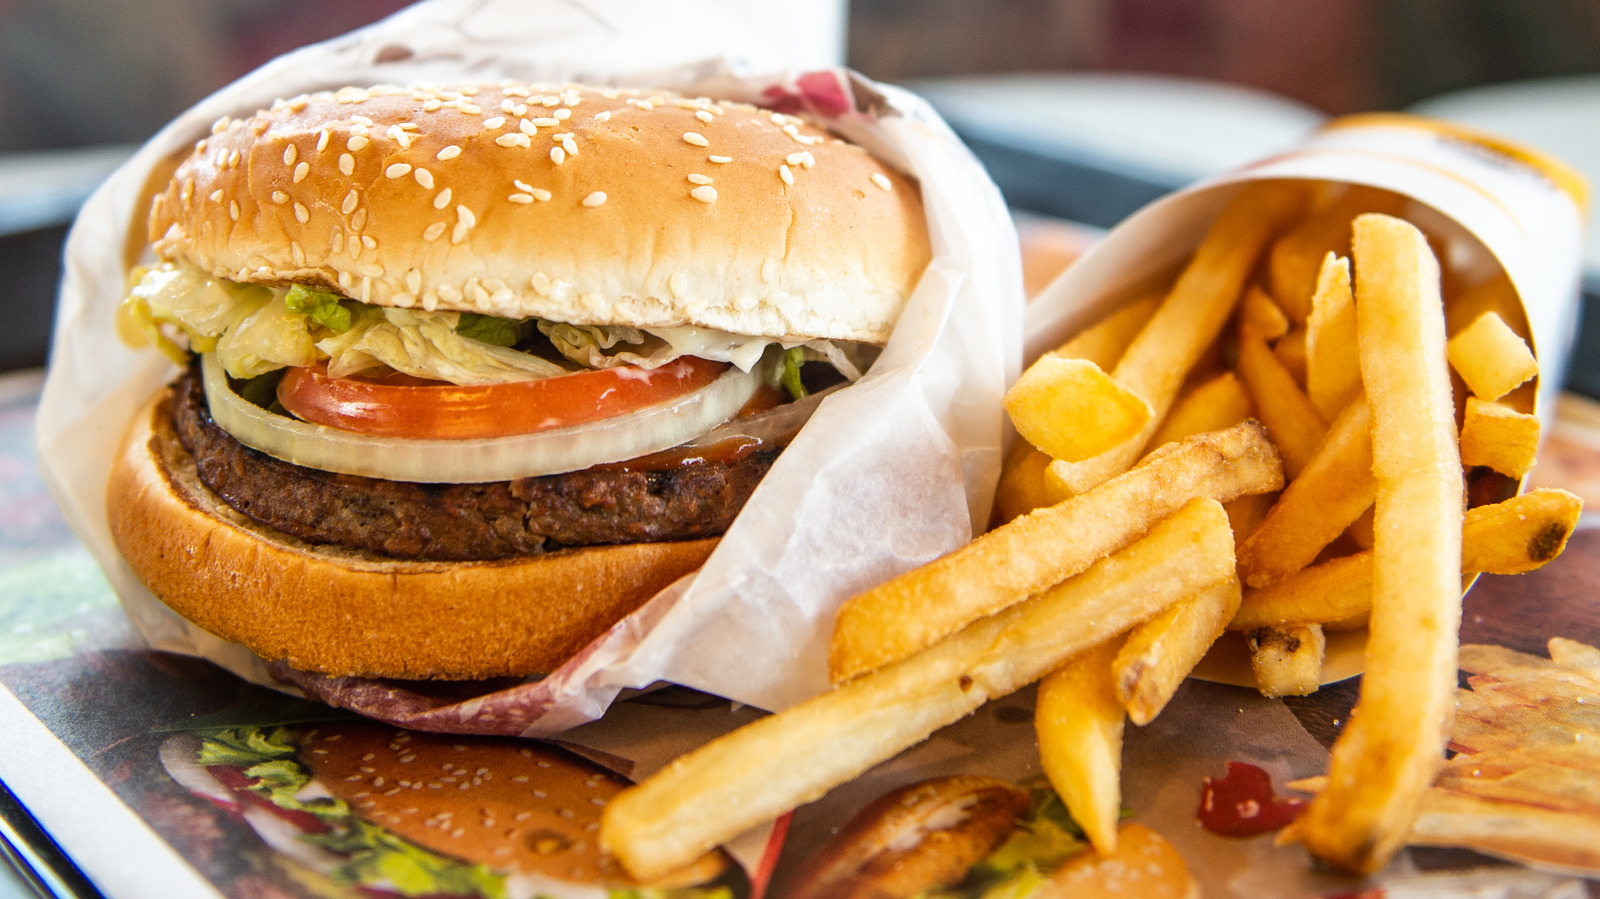 burger king hamburger with fries